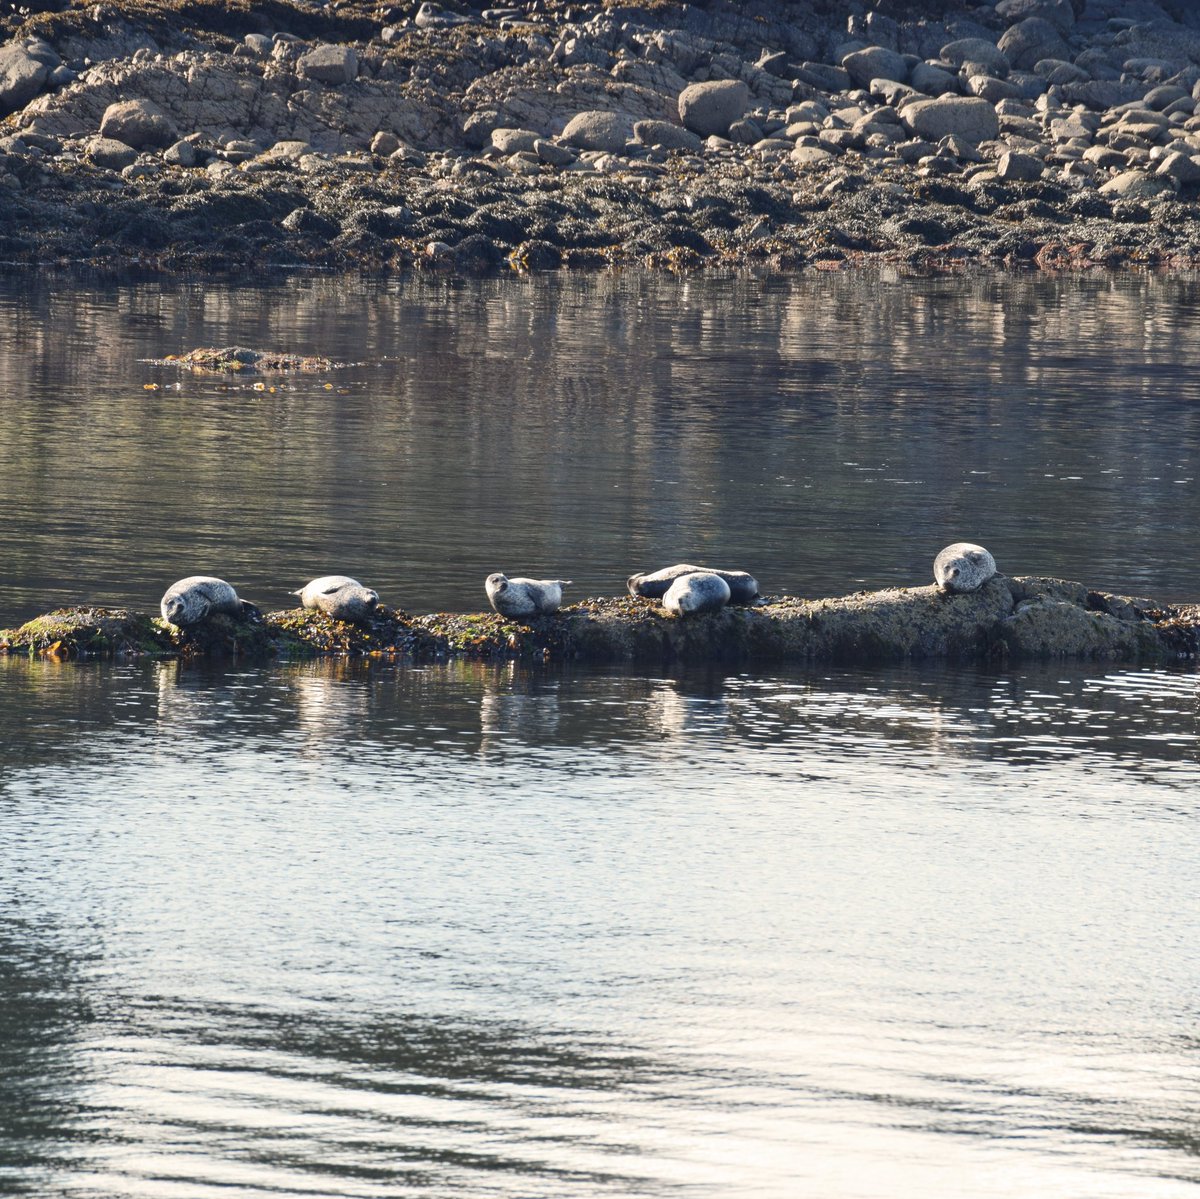 Seals.

#castleton #lochfyne #seals #scottishwildlife #scottishsealife #visitscotland